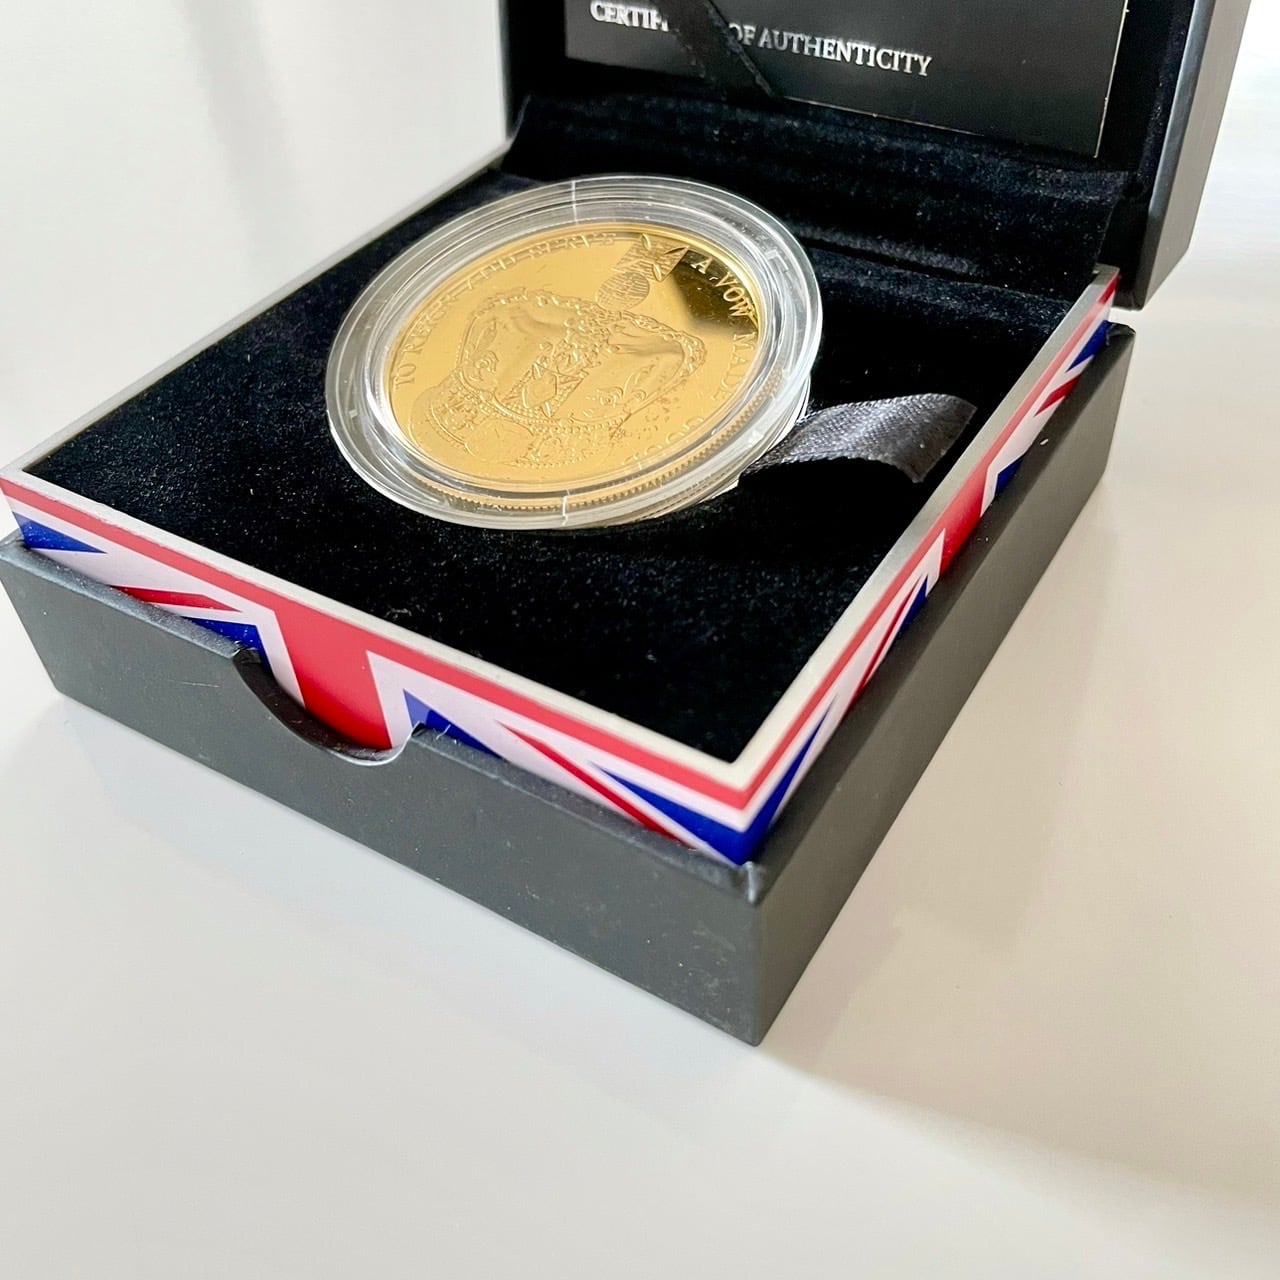 2013年エリザベス女王陛下の戴冠60周年記念 5ポンドゴールドメッキ銀貨